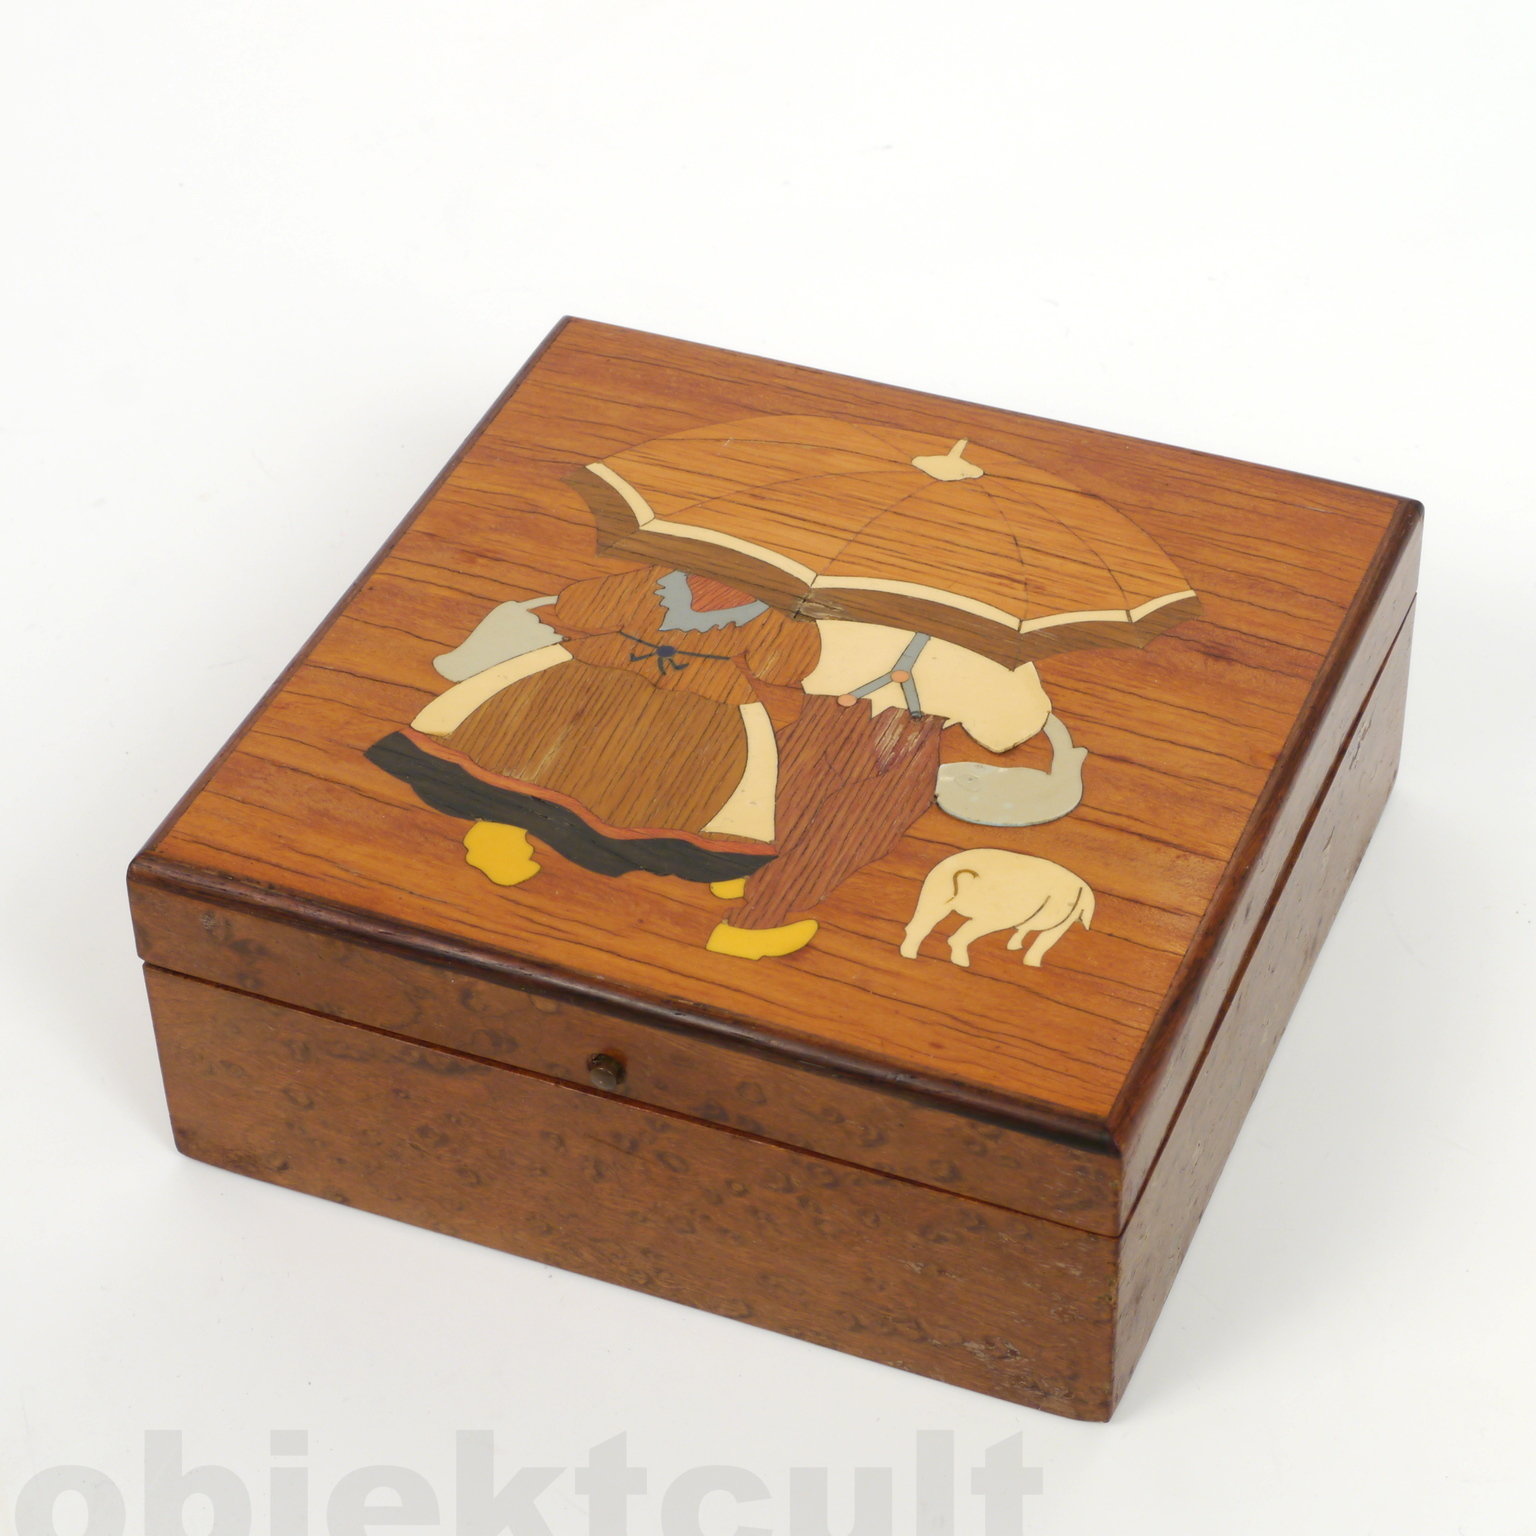 lid box, Deckeldose, manufacturer: unknown, design: Ludwig Hohlwein (zugeschrieben)